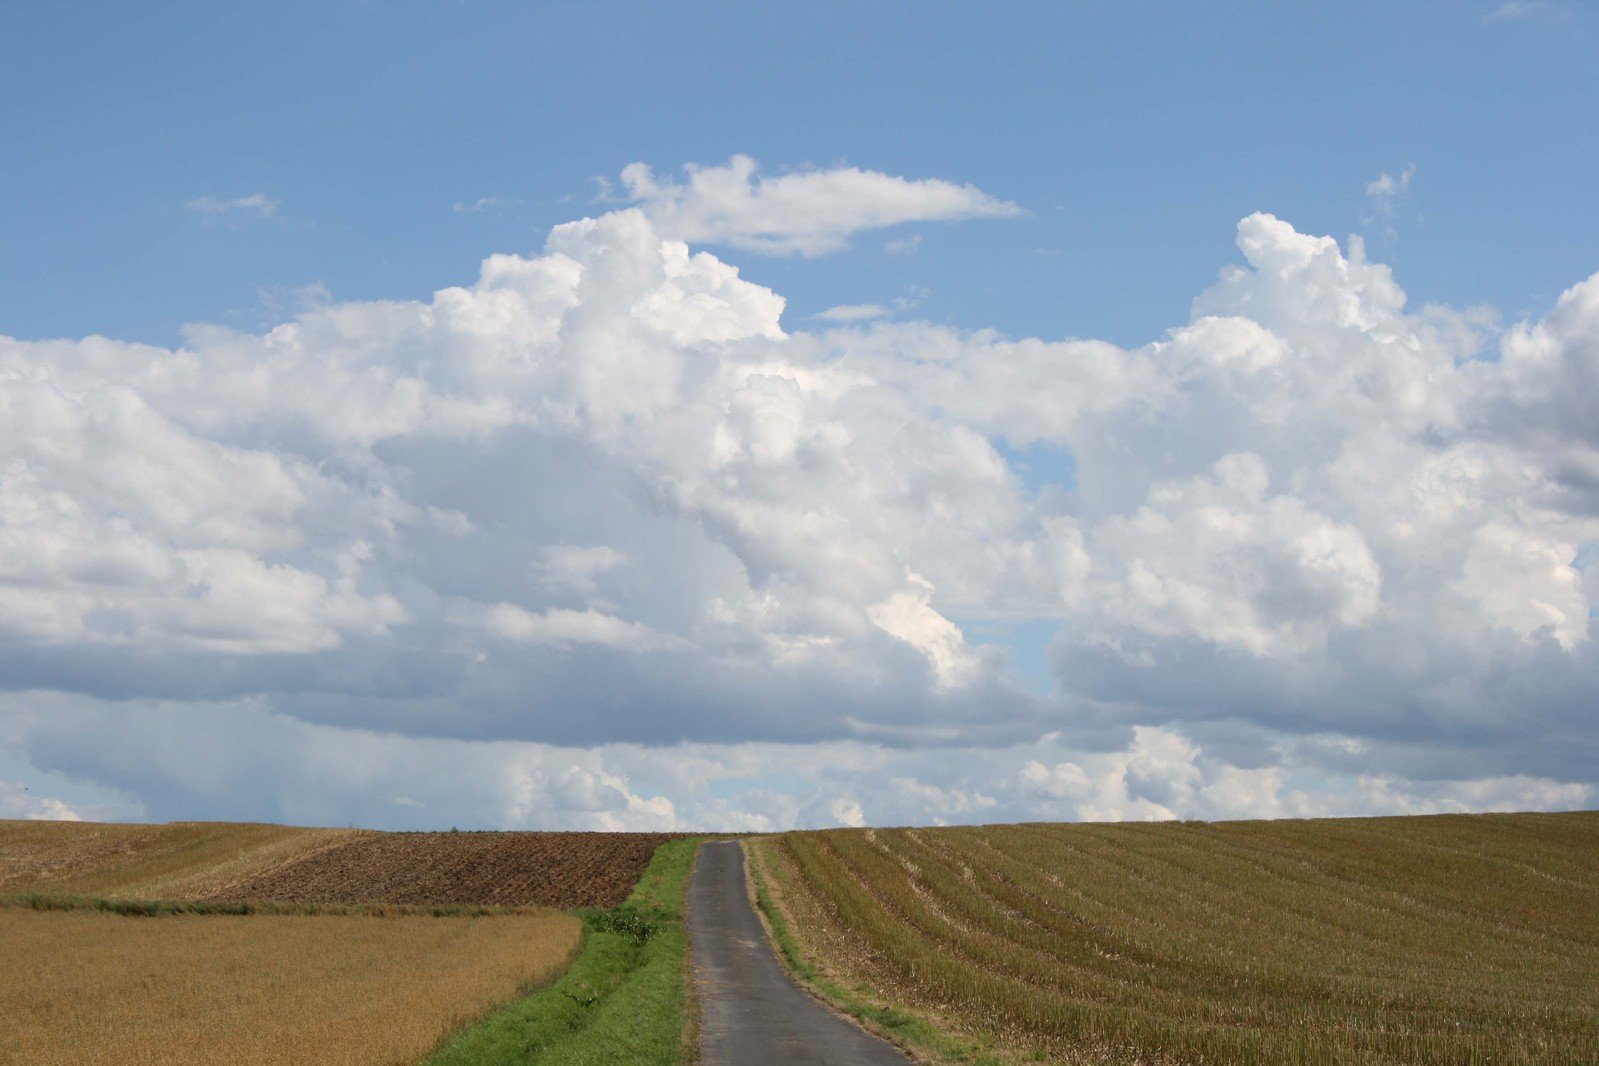 a long, empty road is shown near an open field